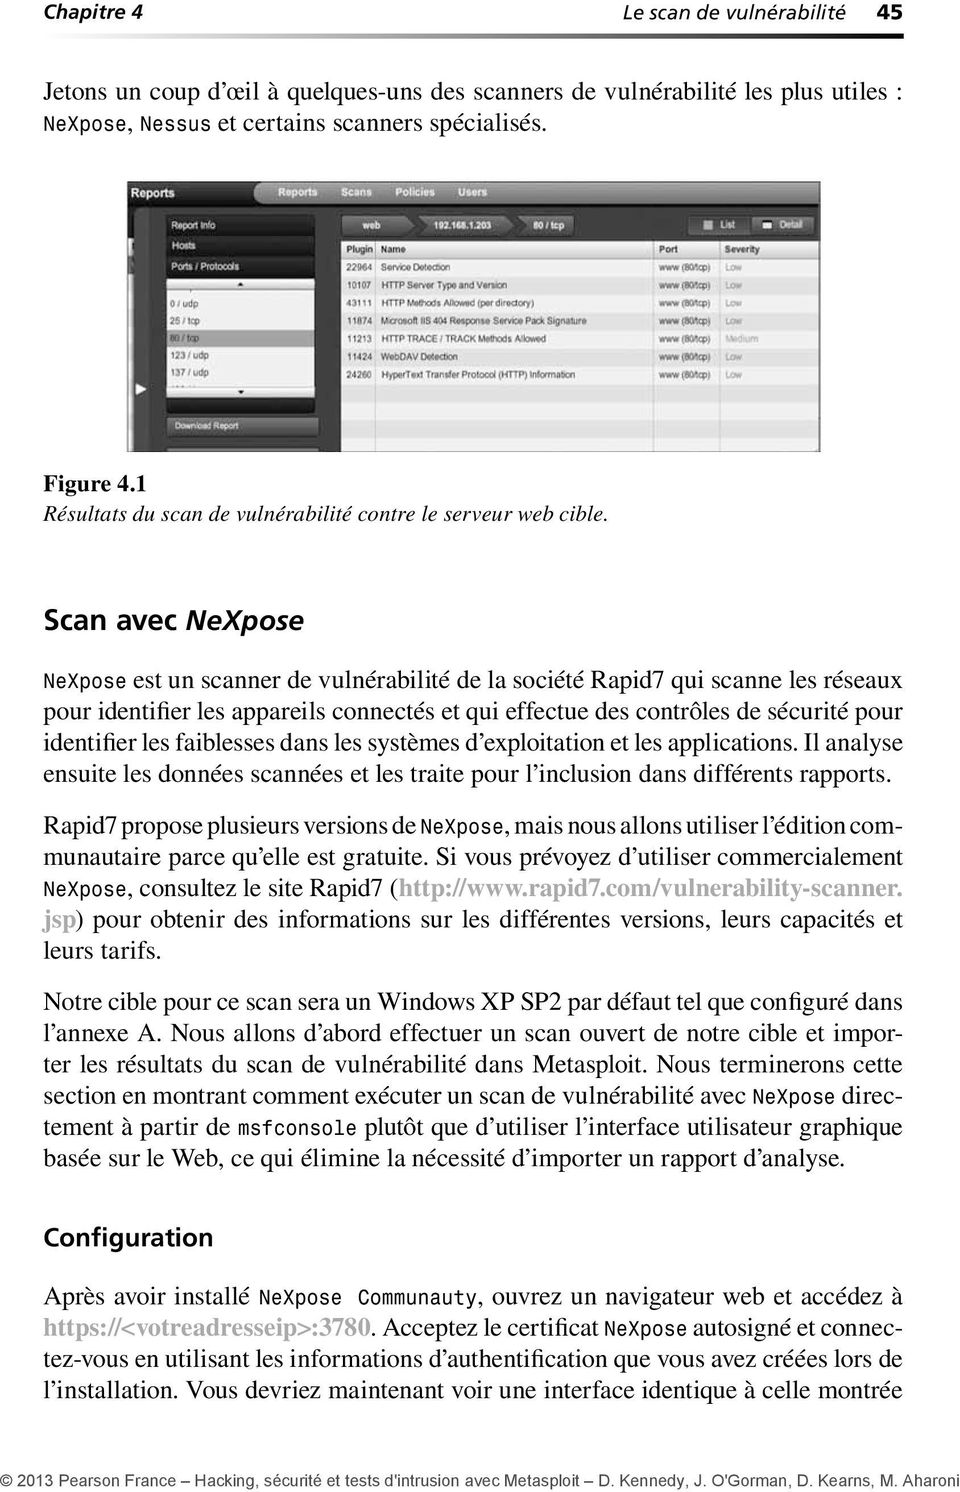 Scan avec NeXpose NeXpose est un scanner de vulnérabilité de la société Rapid7 qui scanne les réseaux pour identifier les appareils connectés et qui effectue des contrôles de sécurité pour identifier